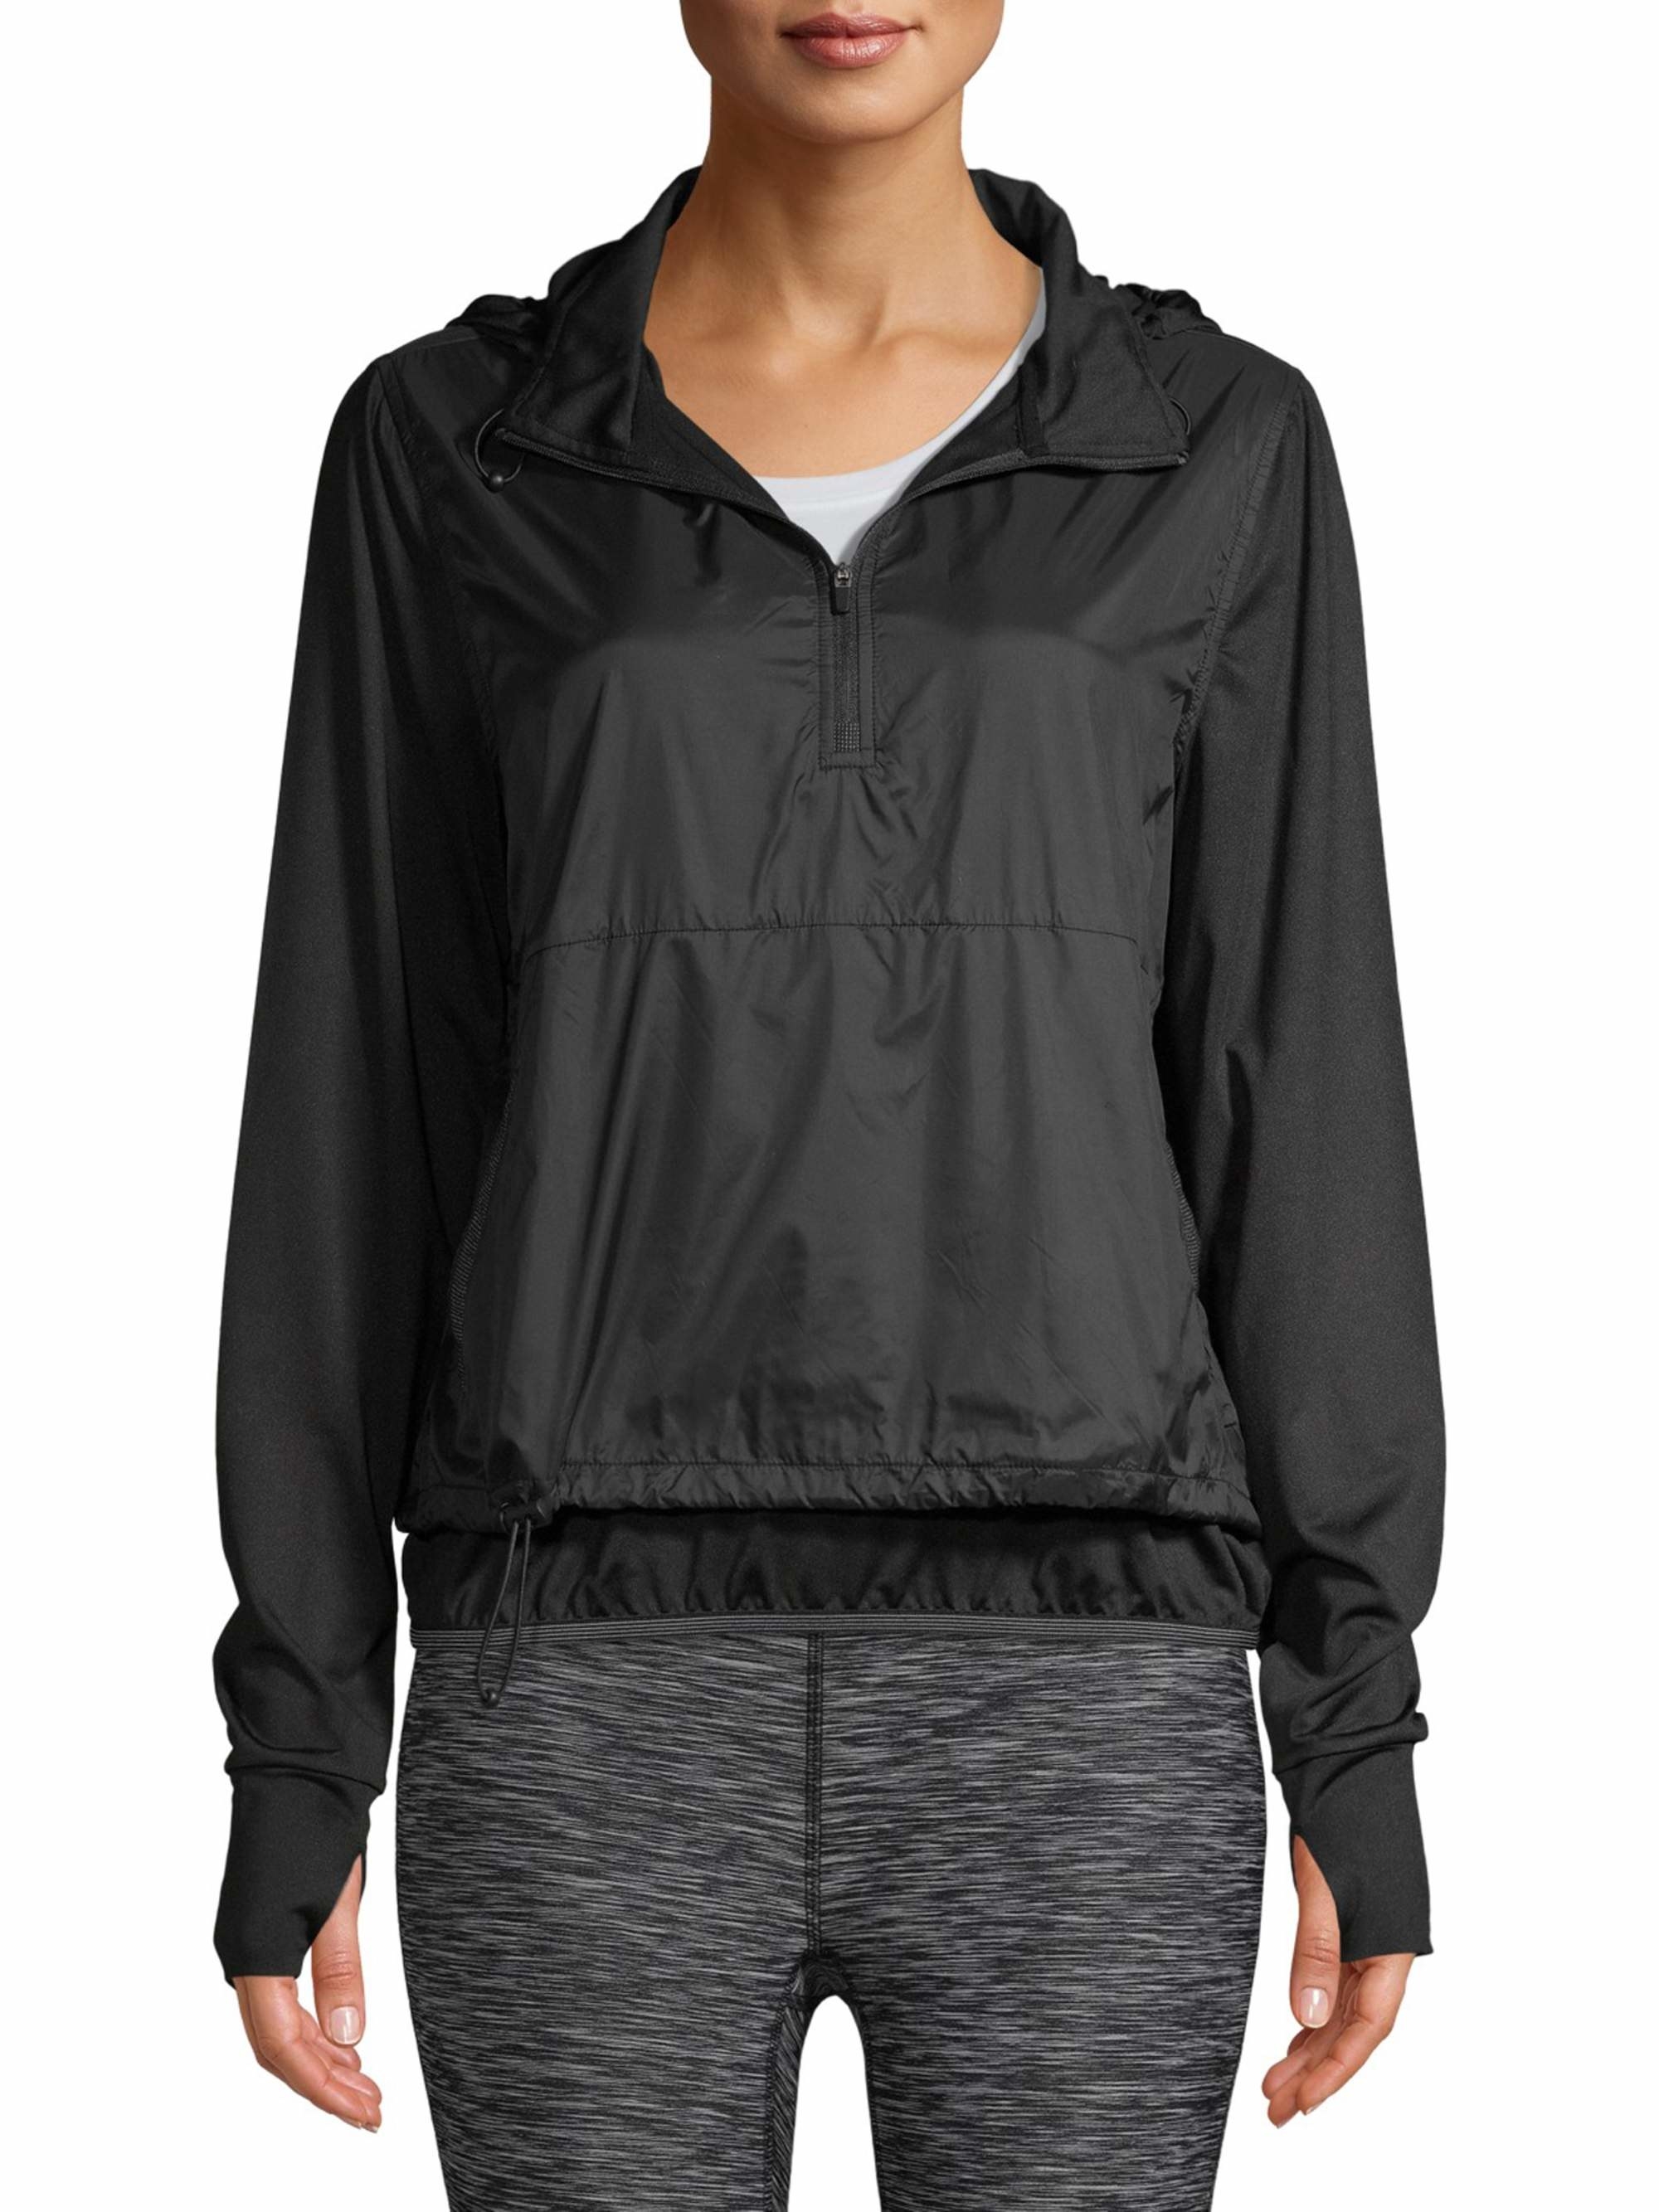 model in a black half-zip rain hoodie